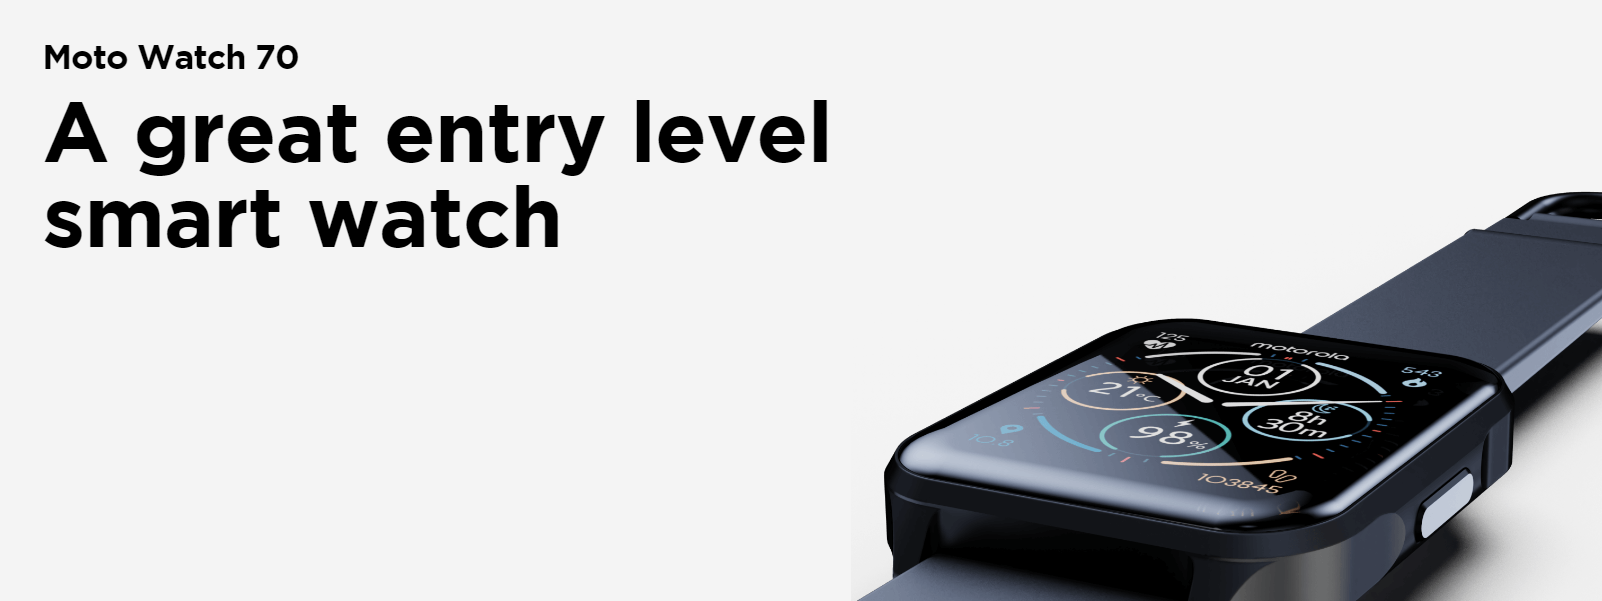 Motorola zapowiada smartwatch Moto Watch 70 z ochroną IP67 i czujnikiem temperatury